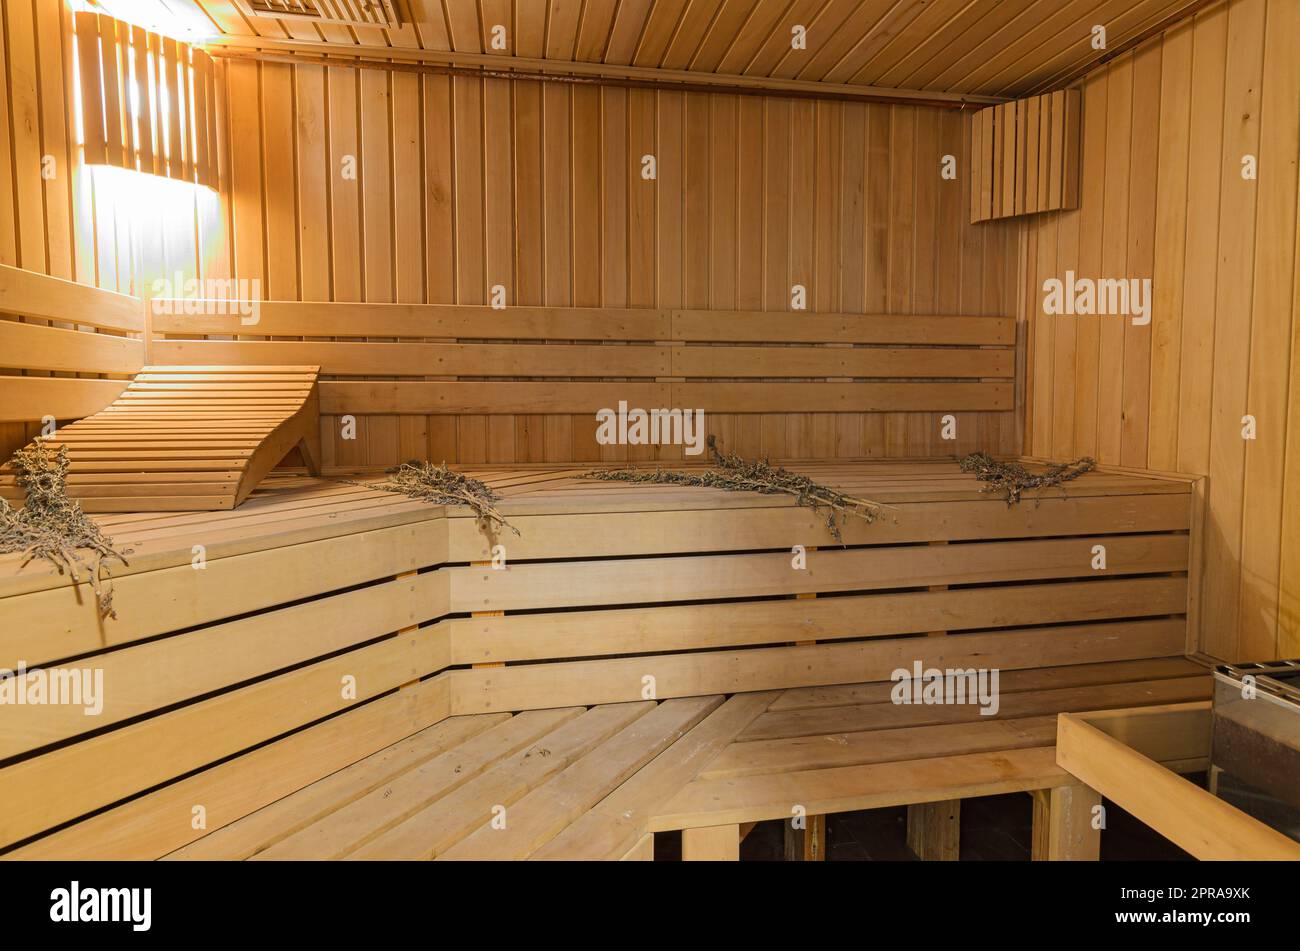 Sauna interior in a private house Stock Photo